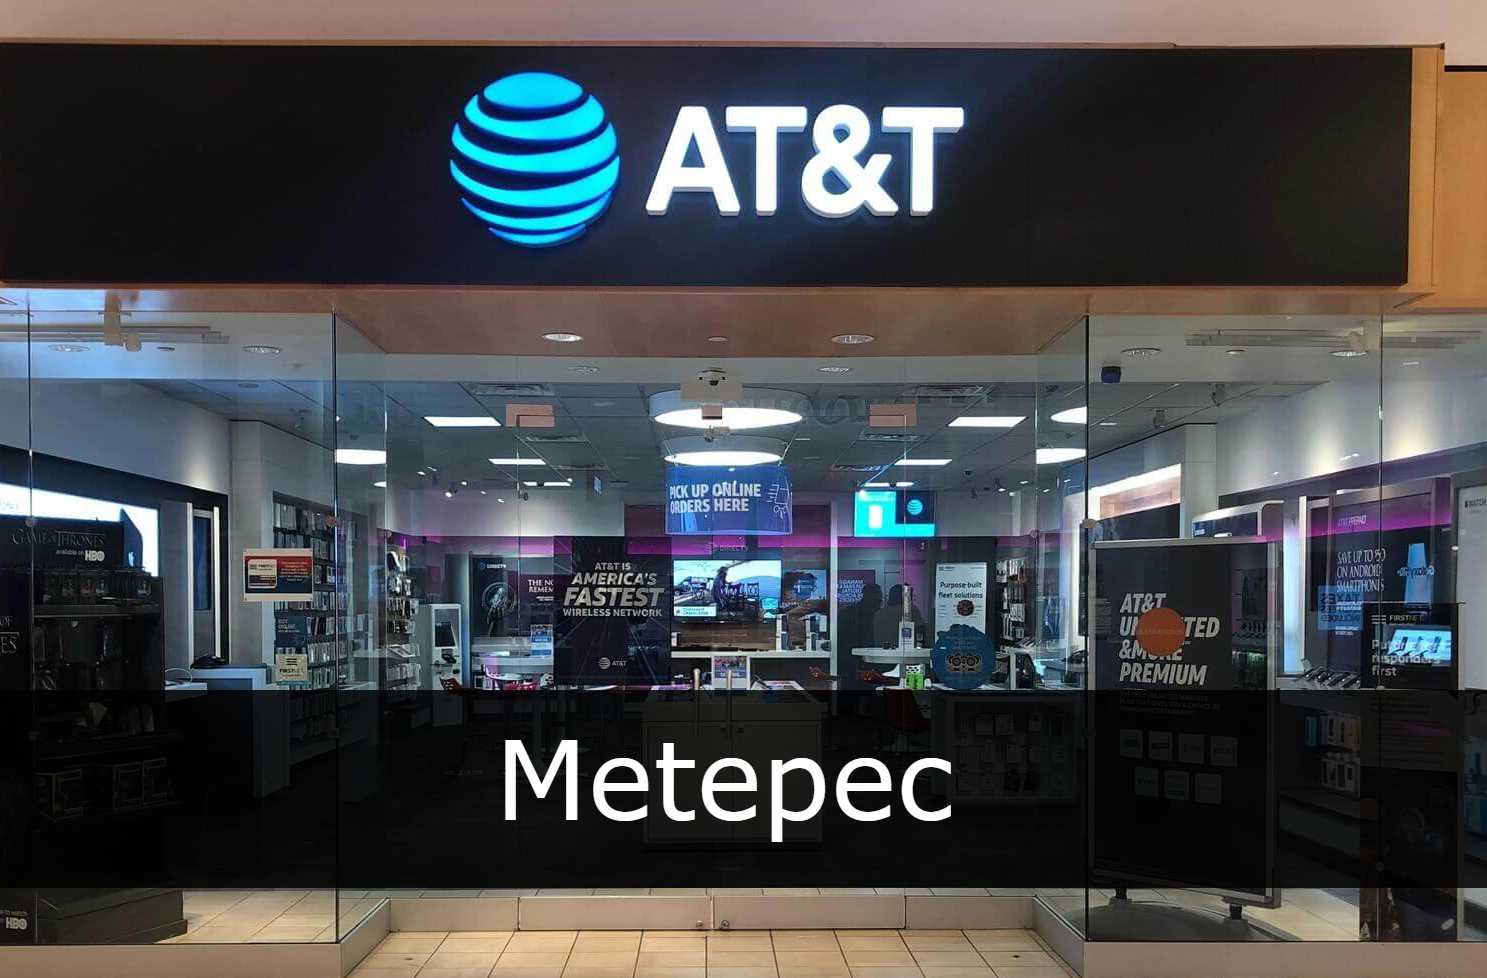 AT&T Metepec